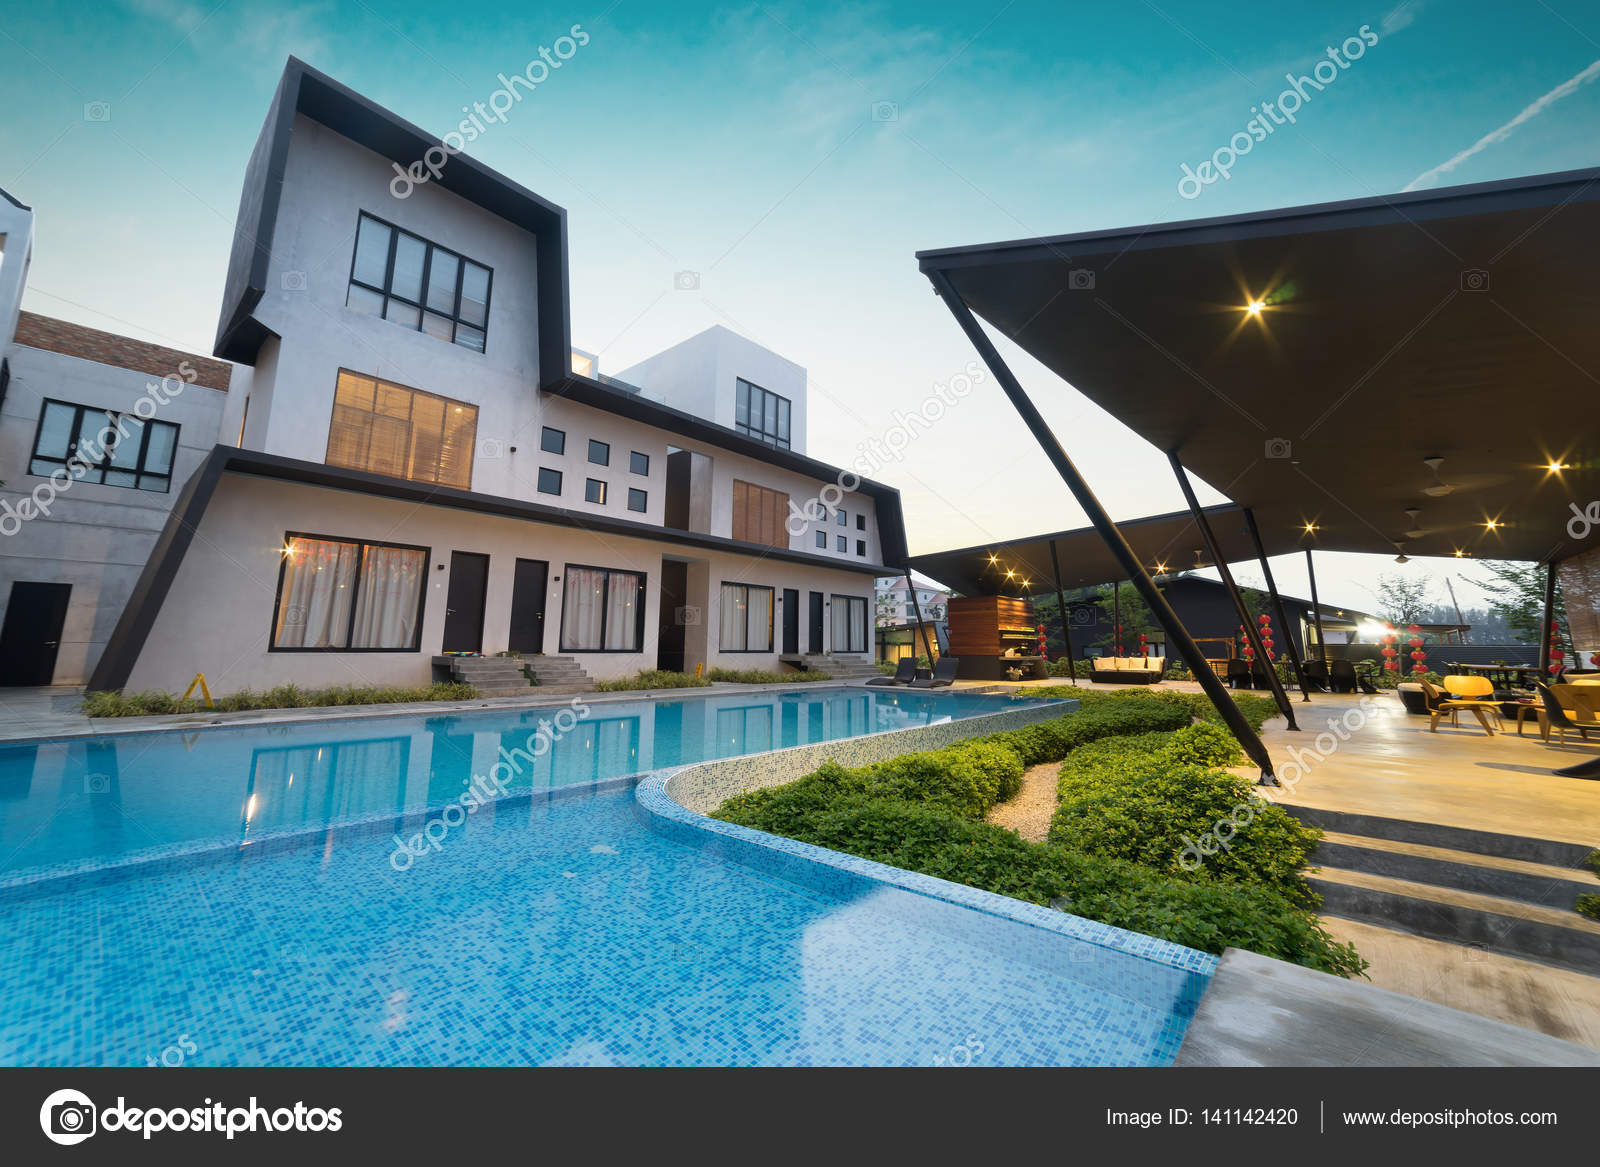 Pool private villa pd The Perfect